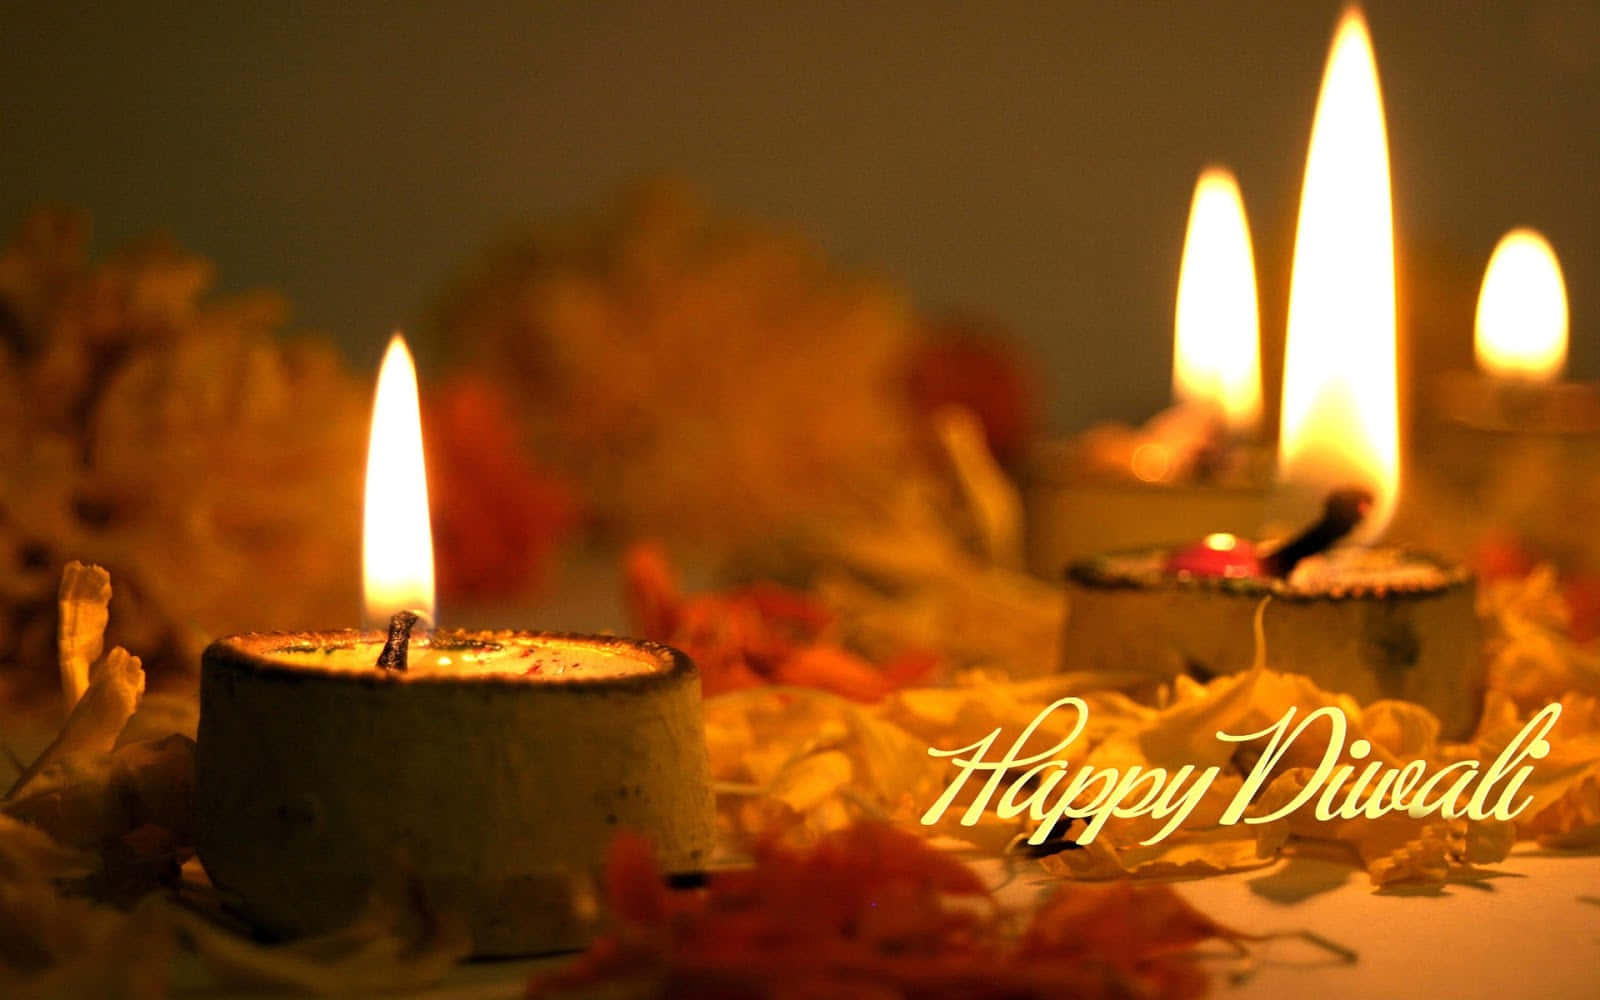 Imagensfelizes De Diwali Com Velas E Flores